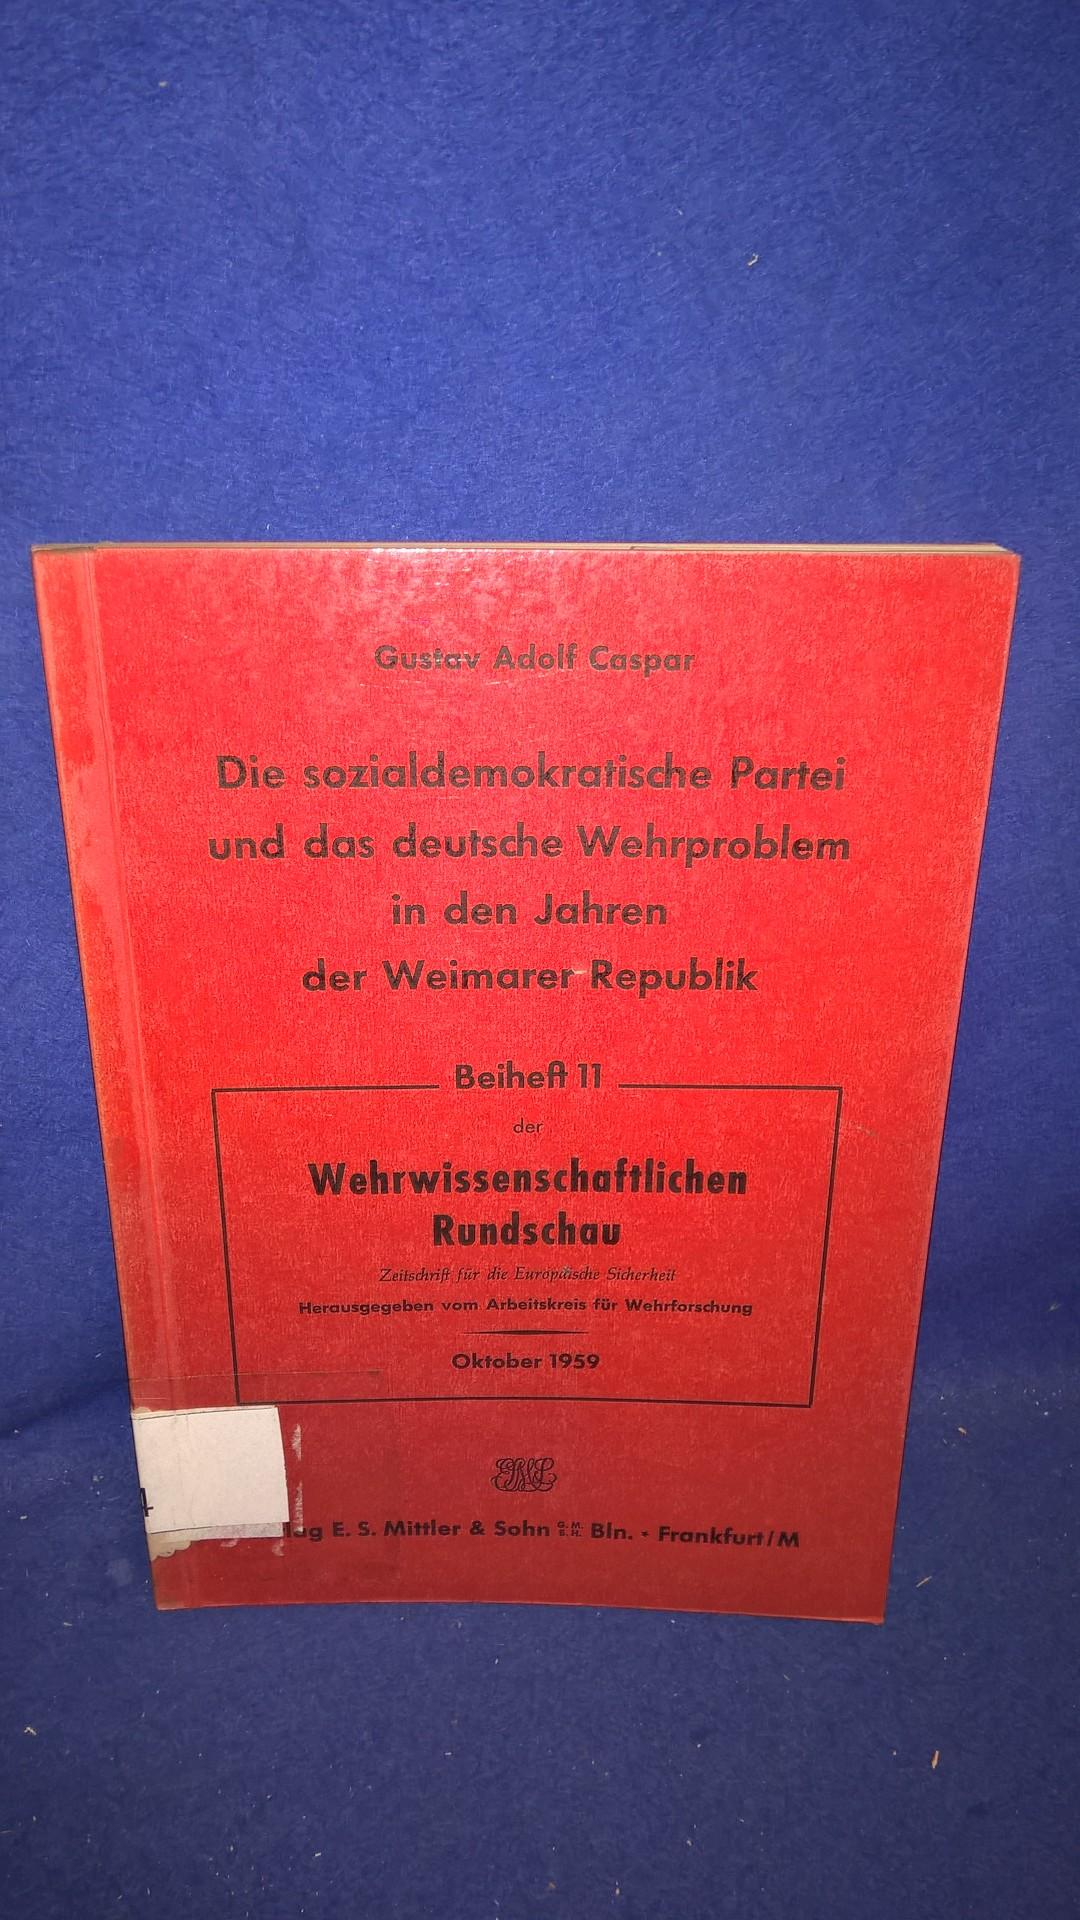 Die sozialdemokratische Partei und das deutsche Wehrproblem in den Jahren der Weimarer Republik.